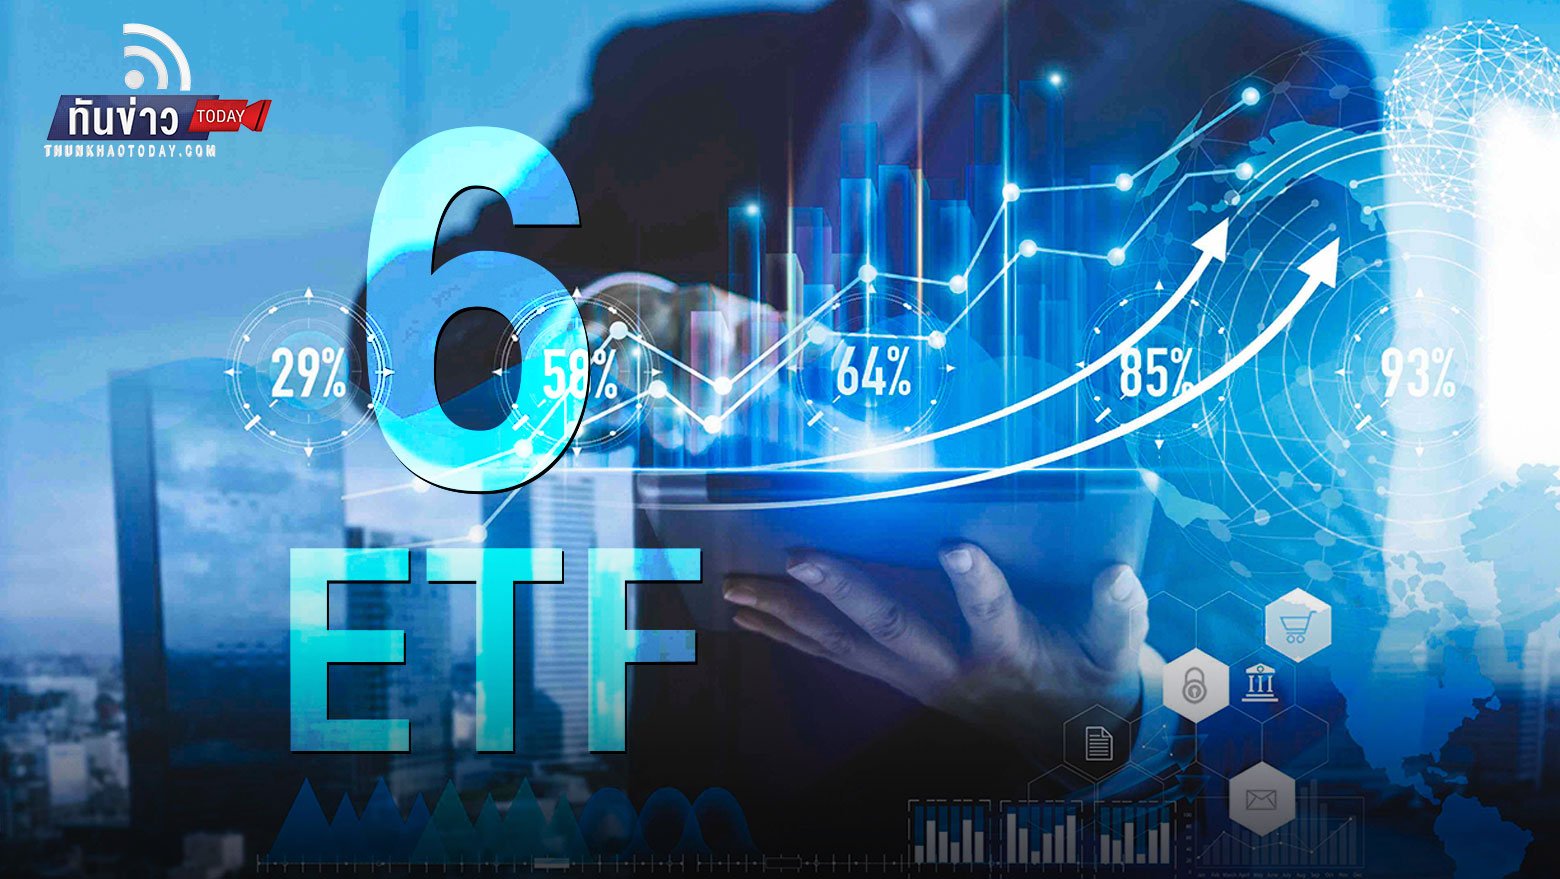 “เปิด 6 ETF ตลาดหุ้นสหรัฐ ทางเลือกลงทุนหุ้นขาลง